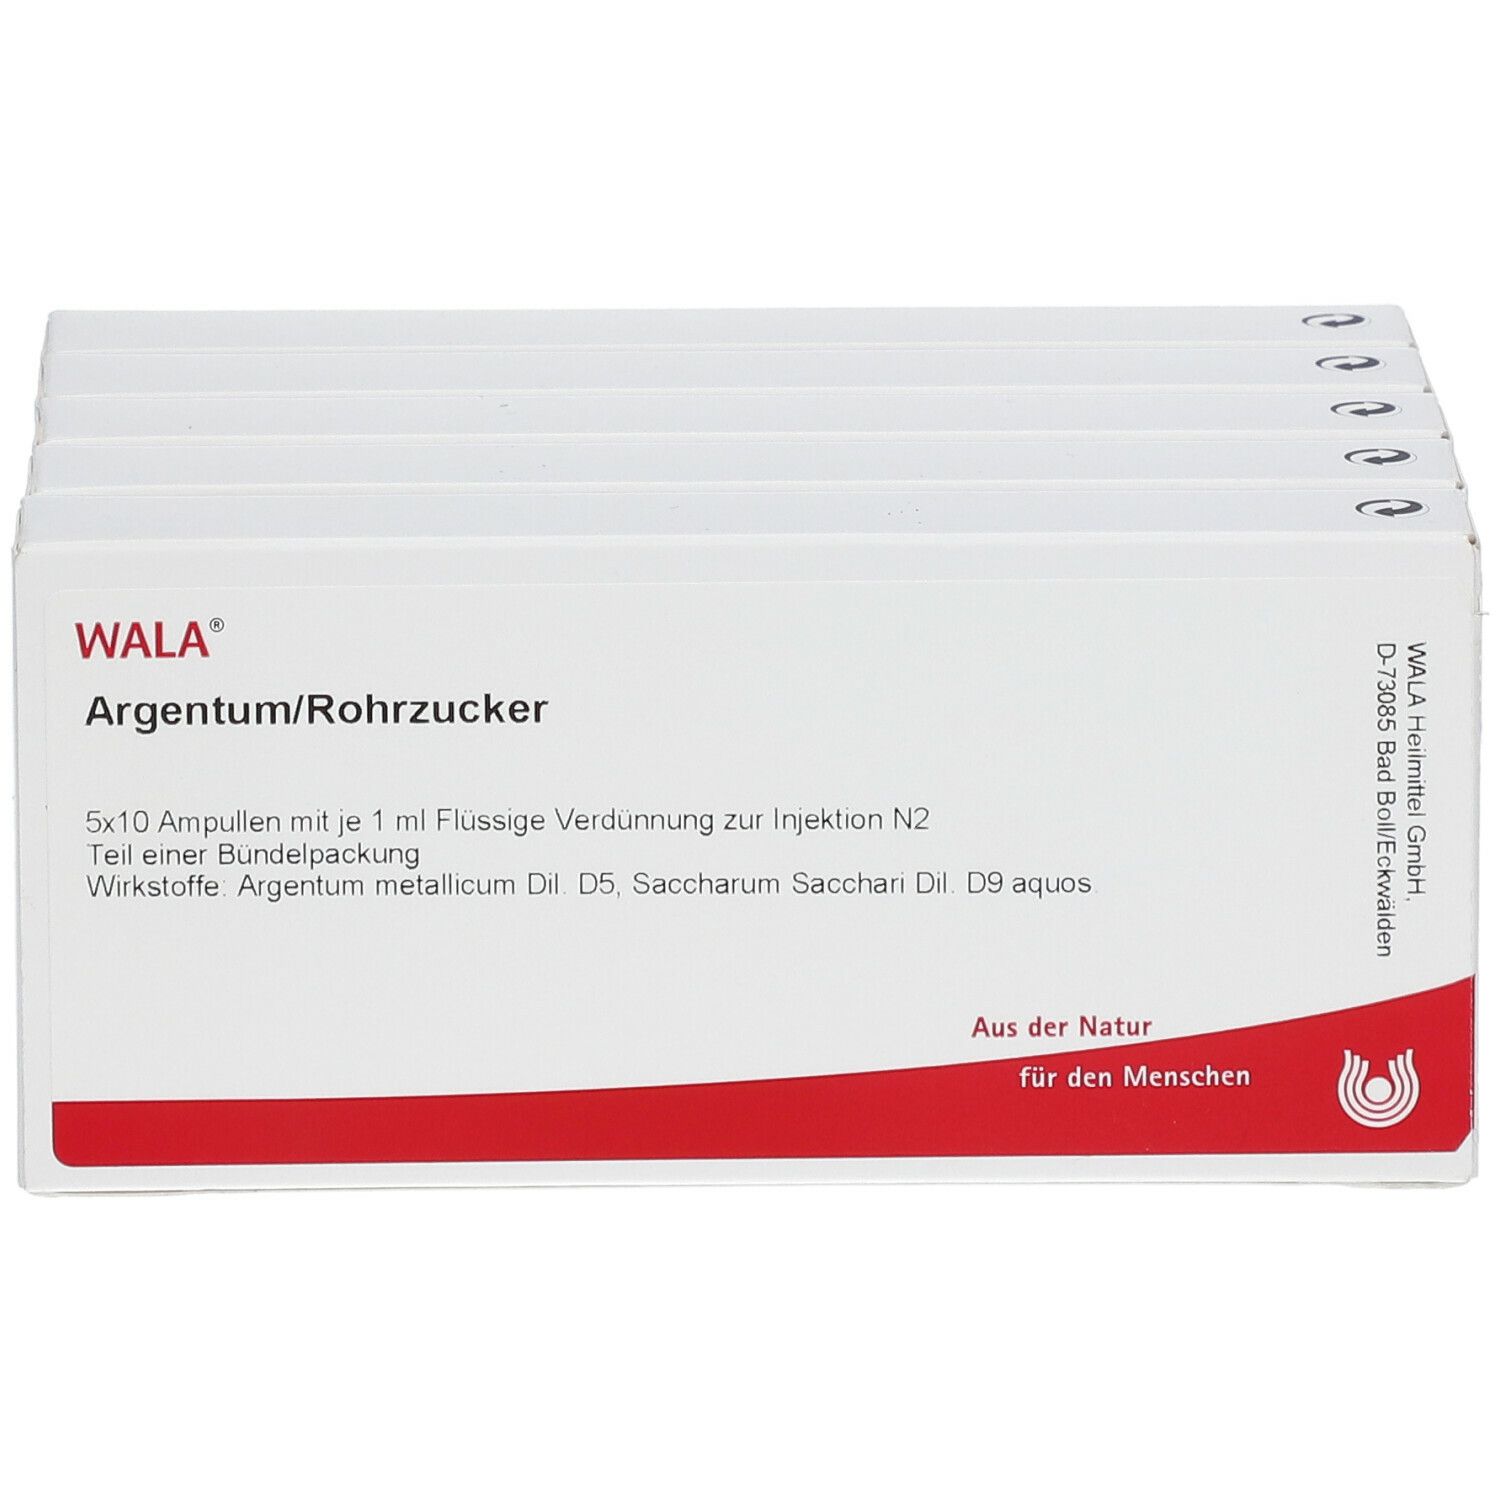 WALA® ARGENTUM/ROHRZUCKER Ampullen